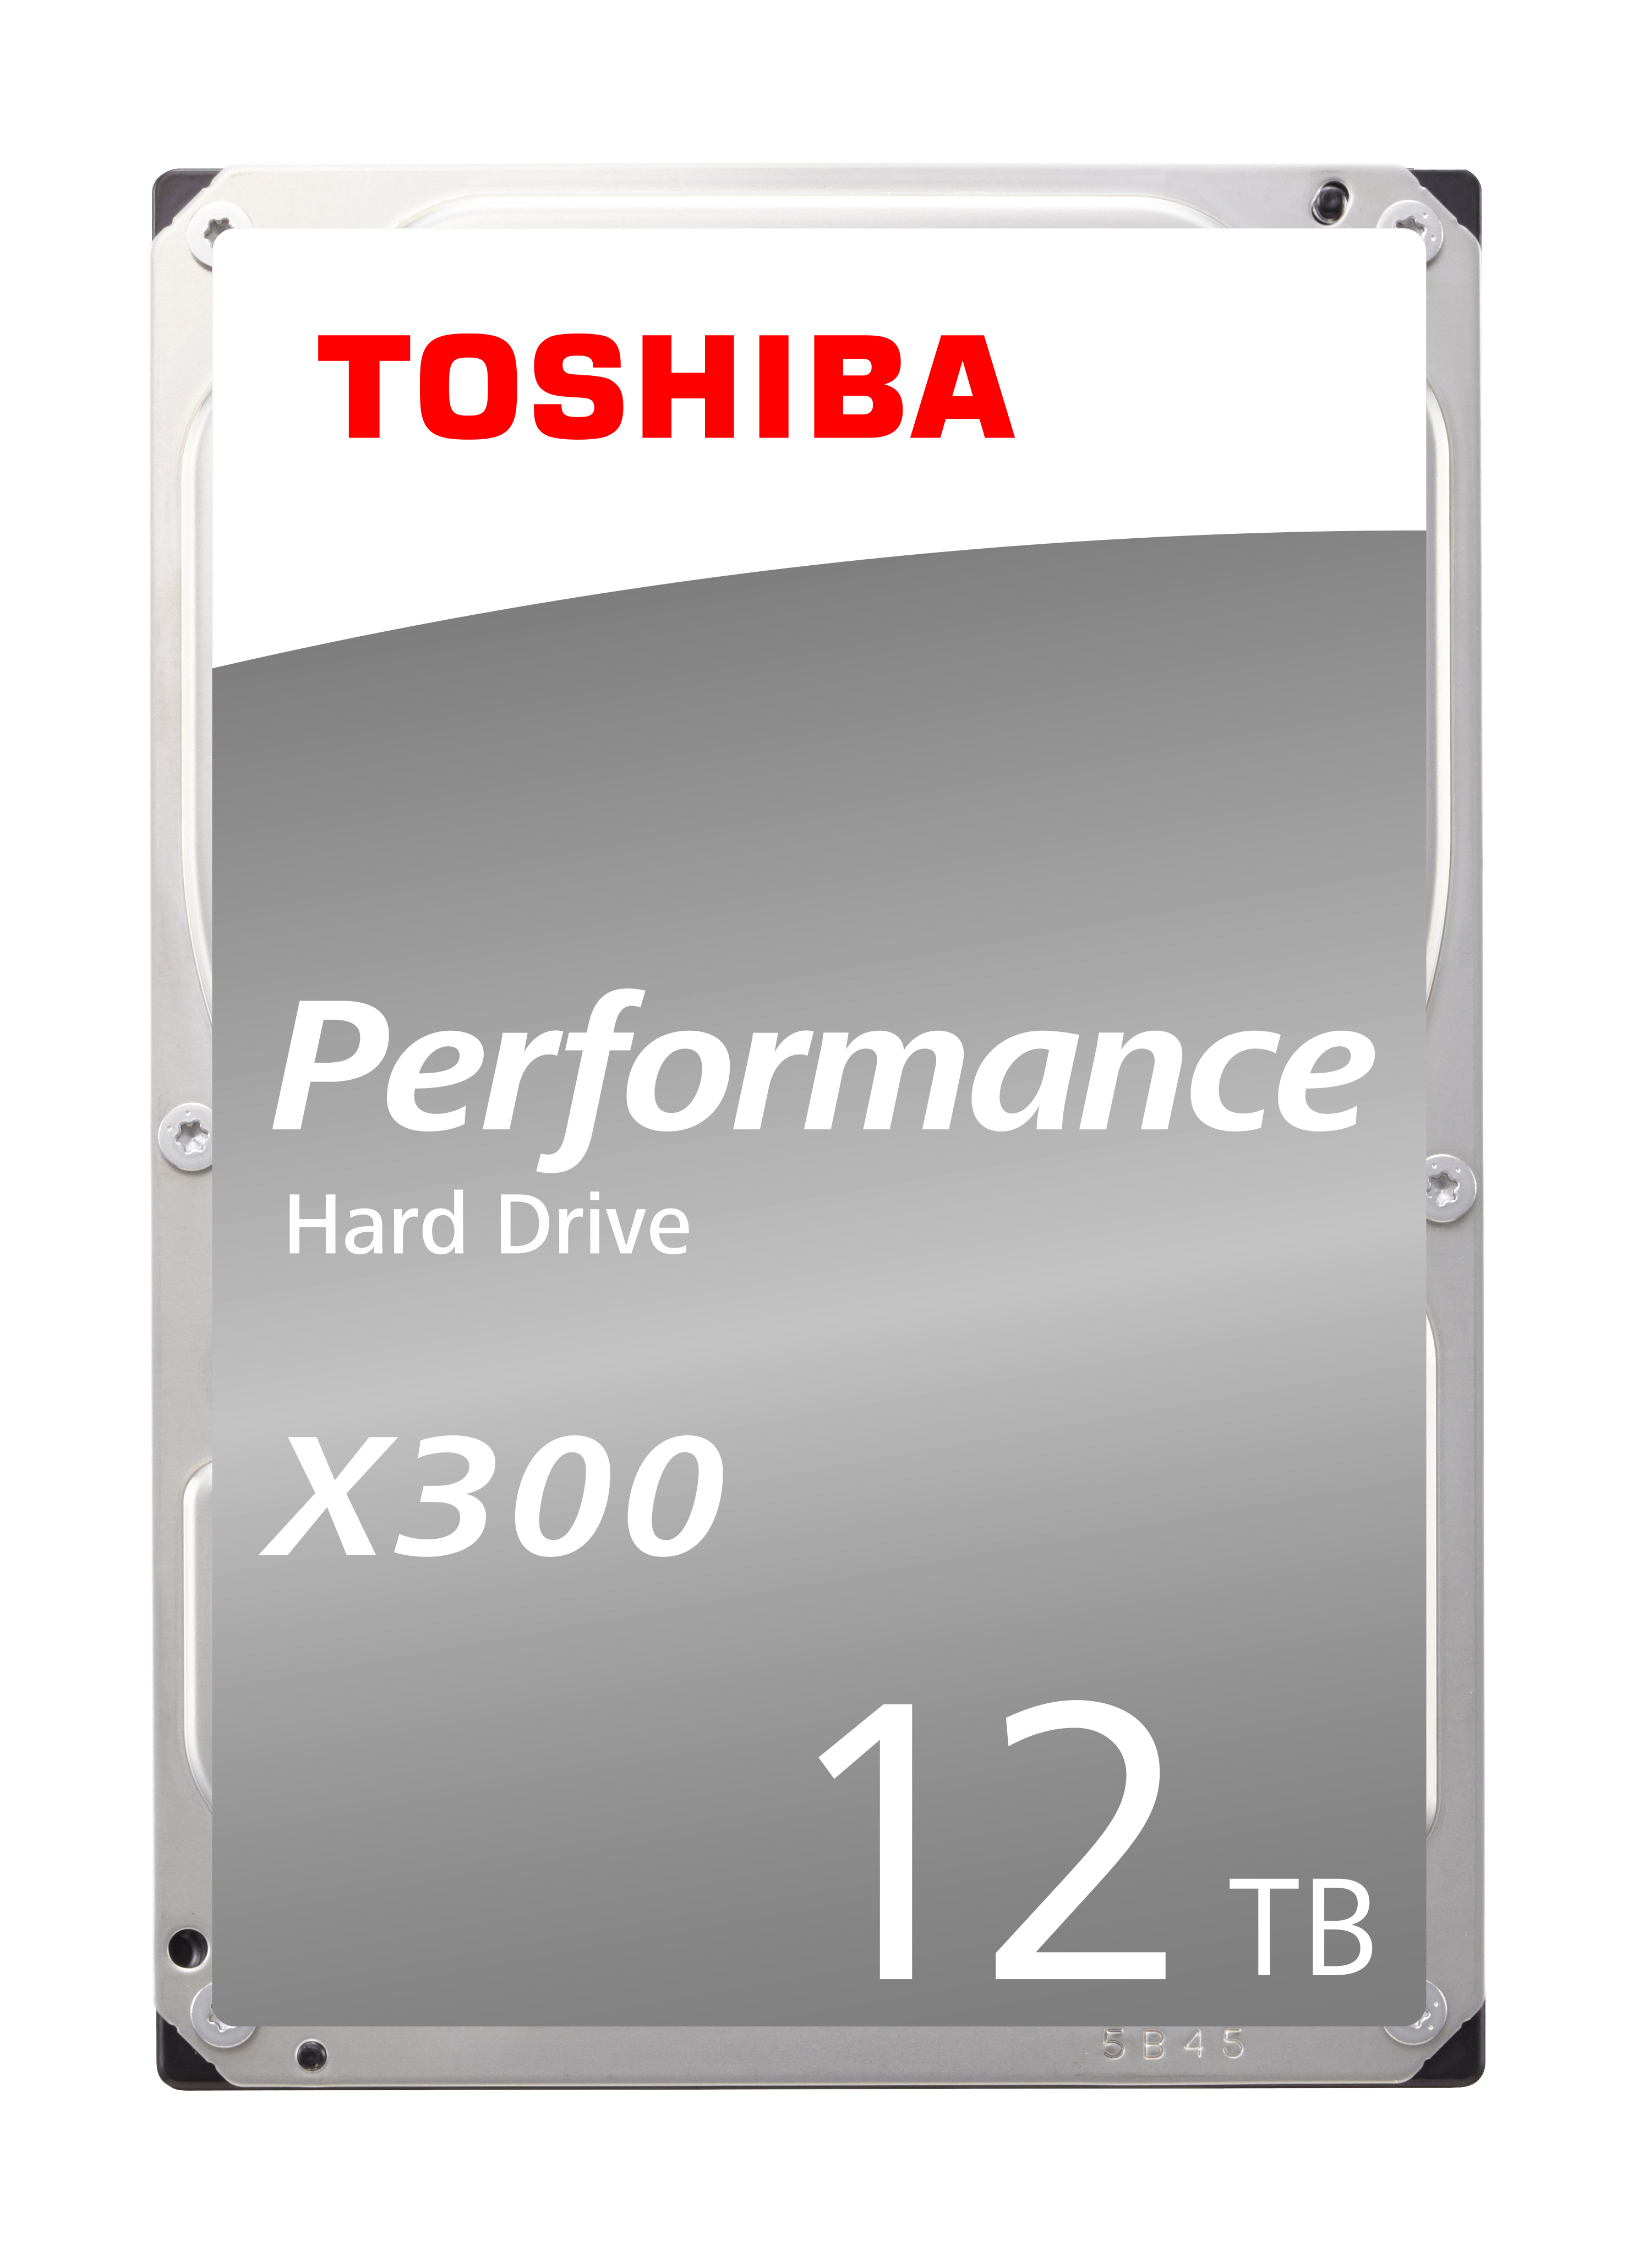 TOSHIBA HDD X300 High Performance 12TB HDWR21CEZSTA internal, SATA 3.5 inch